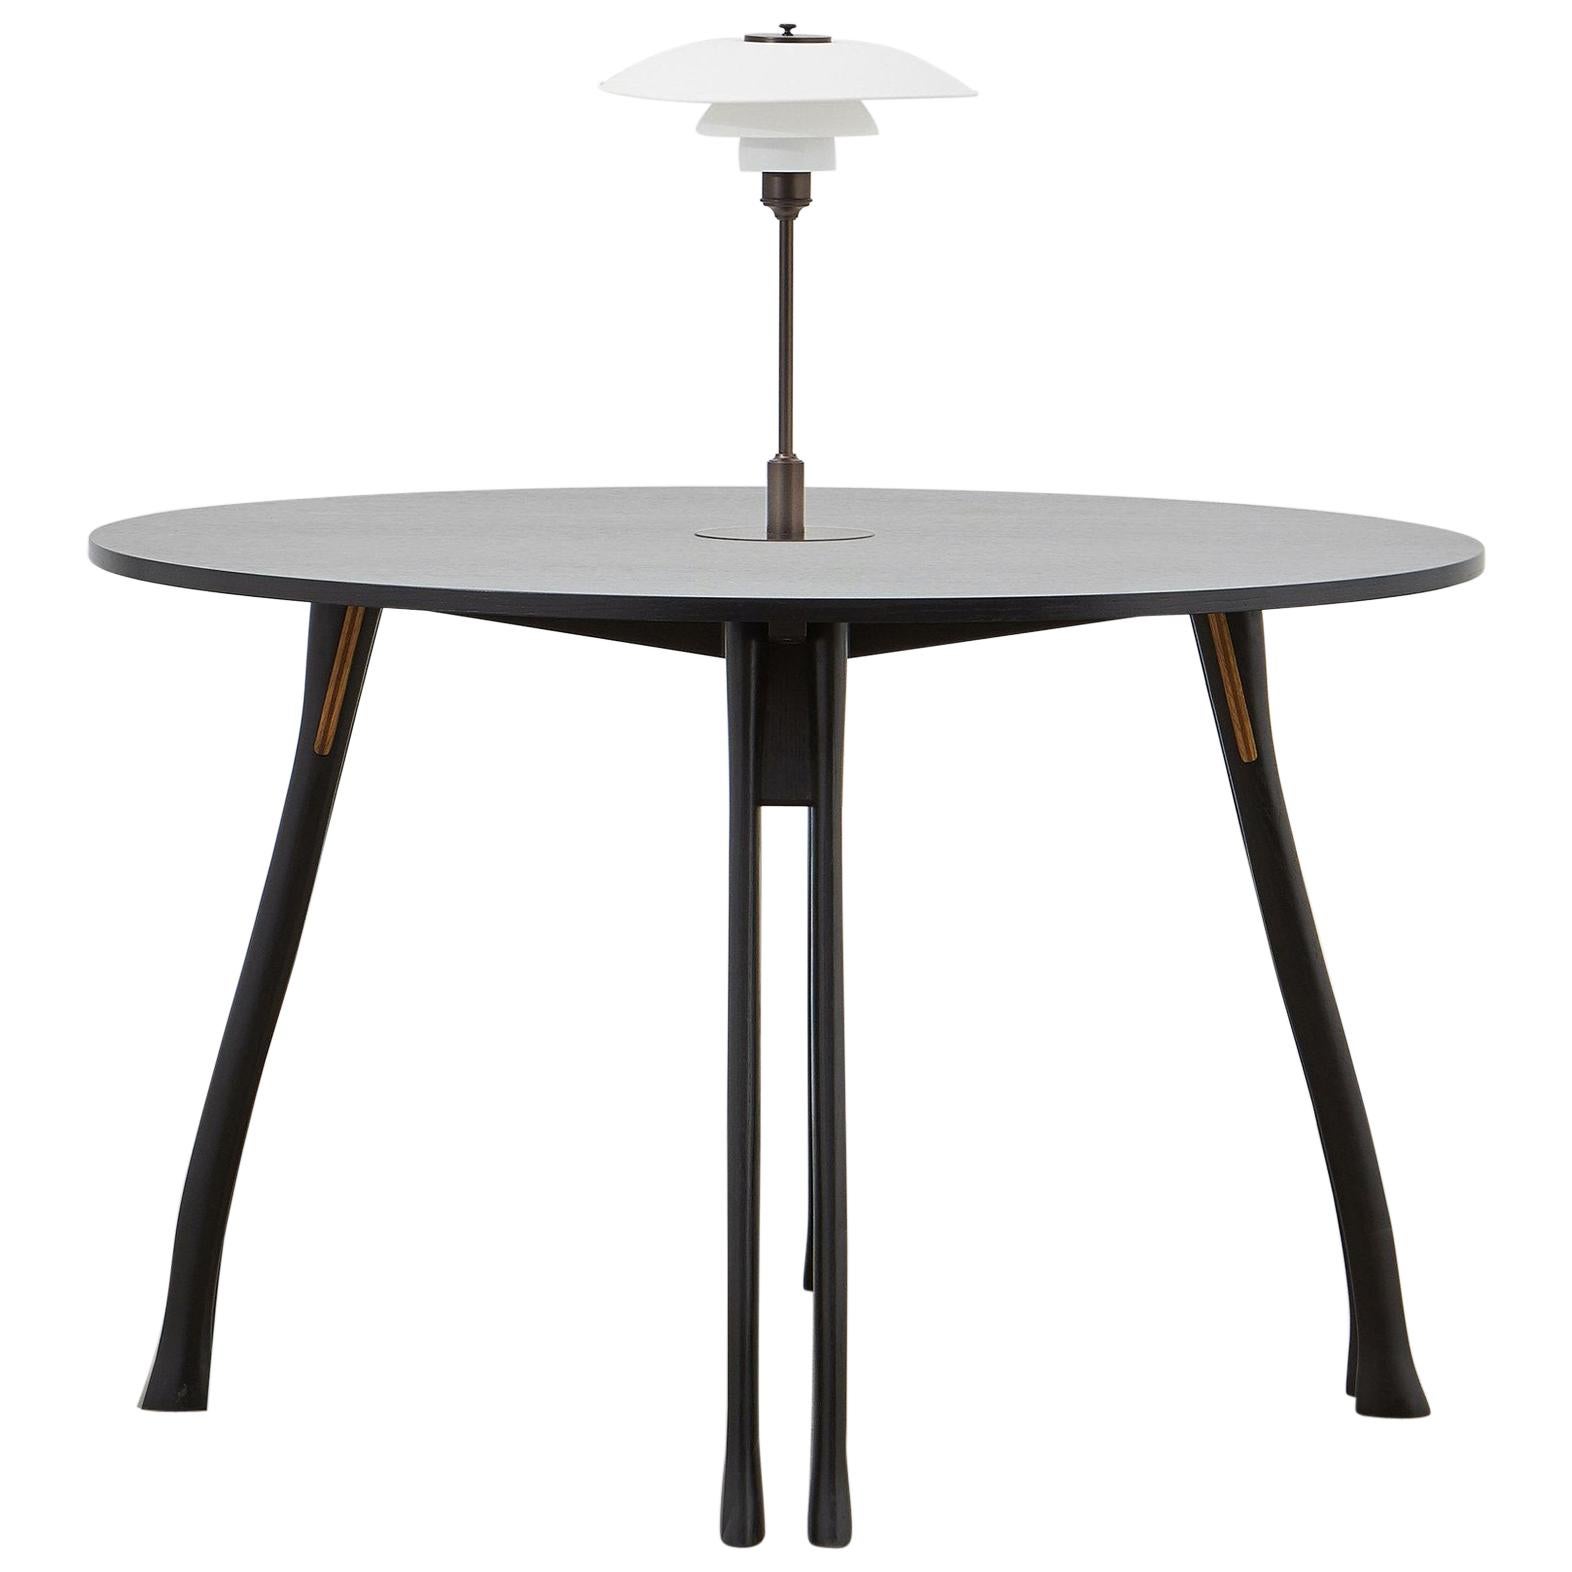 PH Axe Table, black oak legs, veneer table plate, white PH 3 ½ - 2 ½ lamp